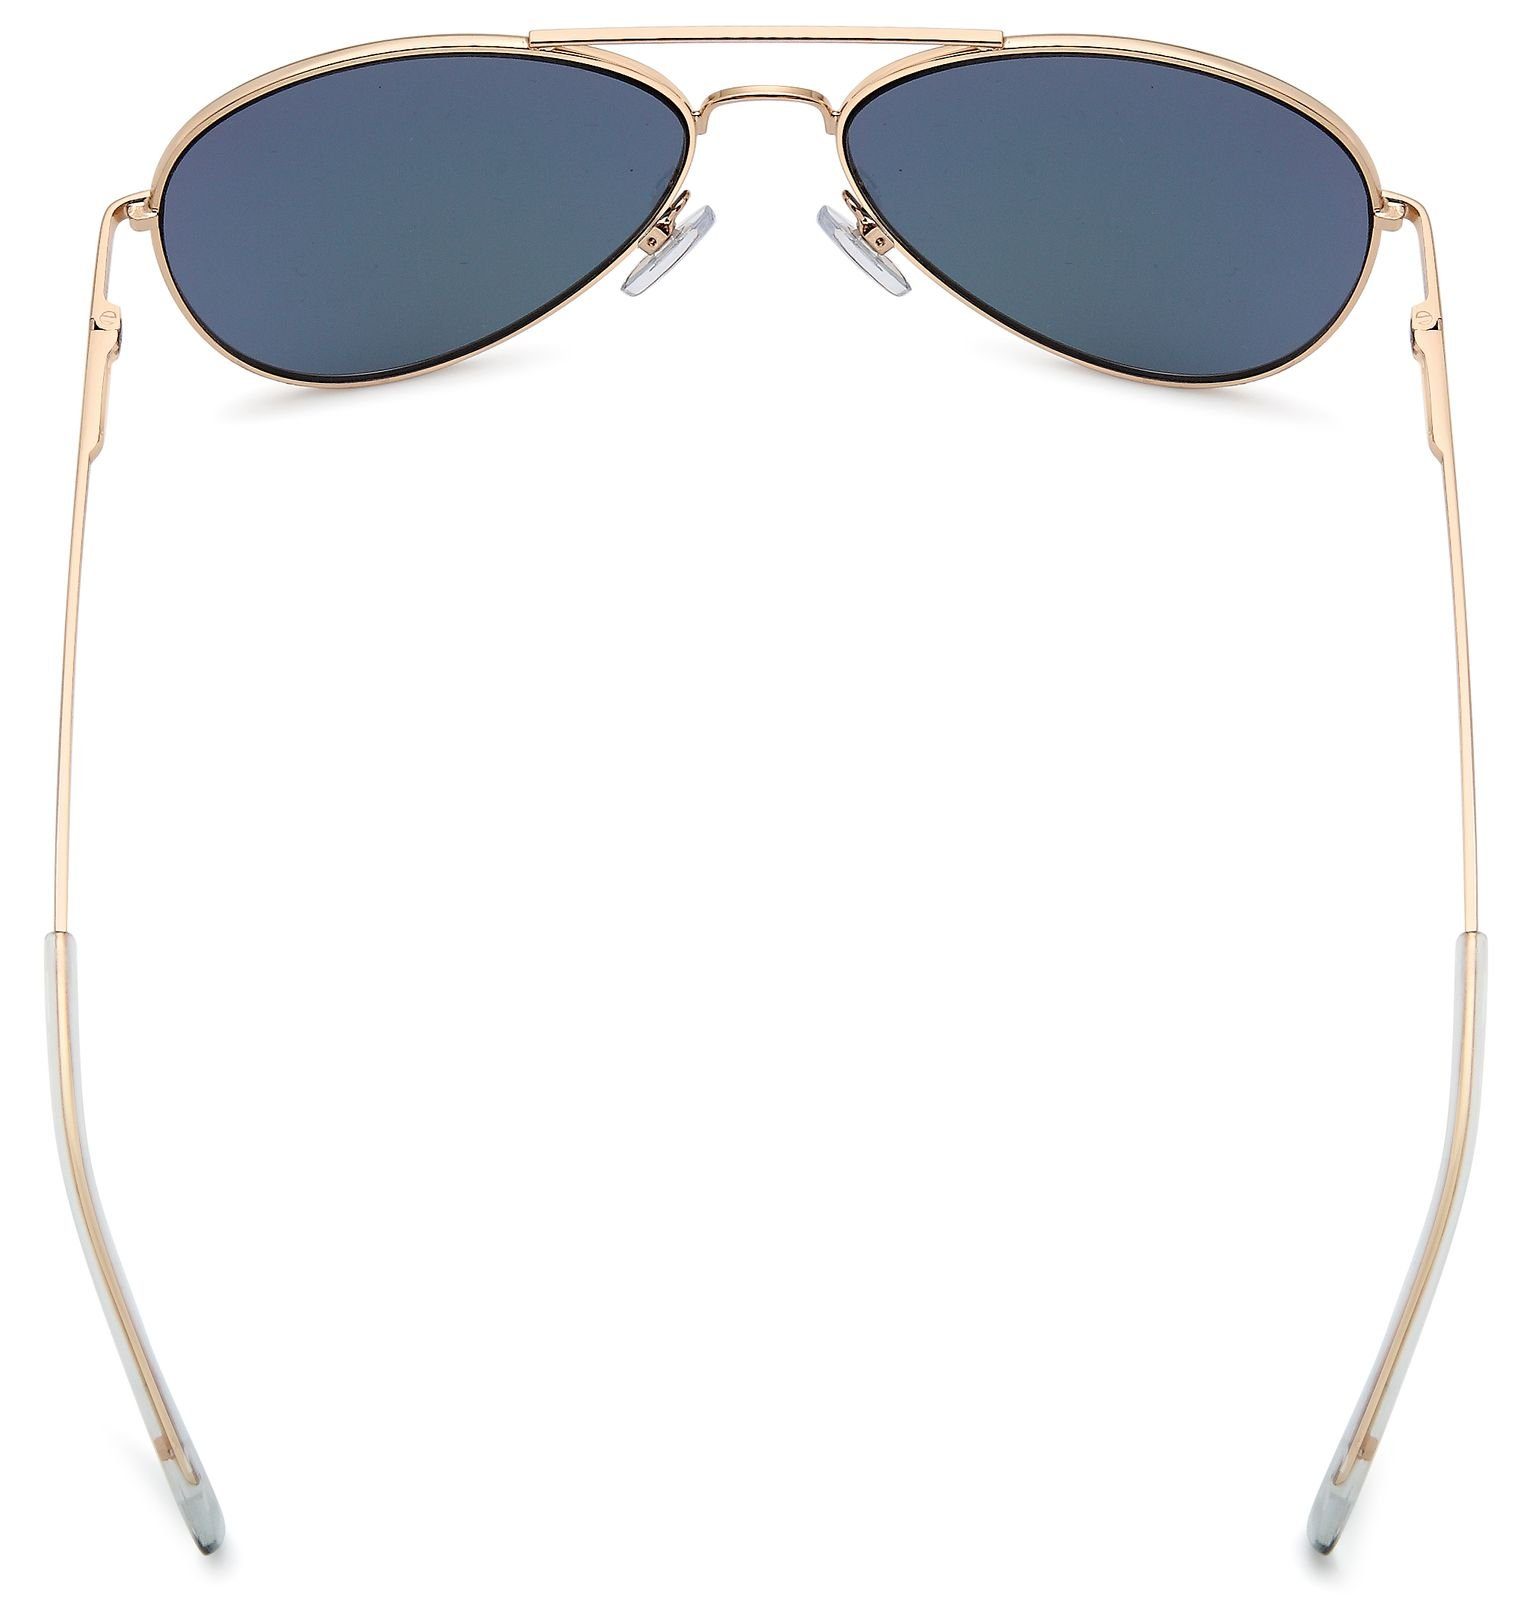 (1-St) Verspiegelt / styleBREAKER verspiegelt Gestell Glas Sonnenbrille Lila Gold